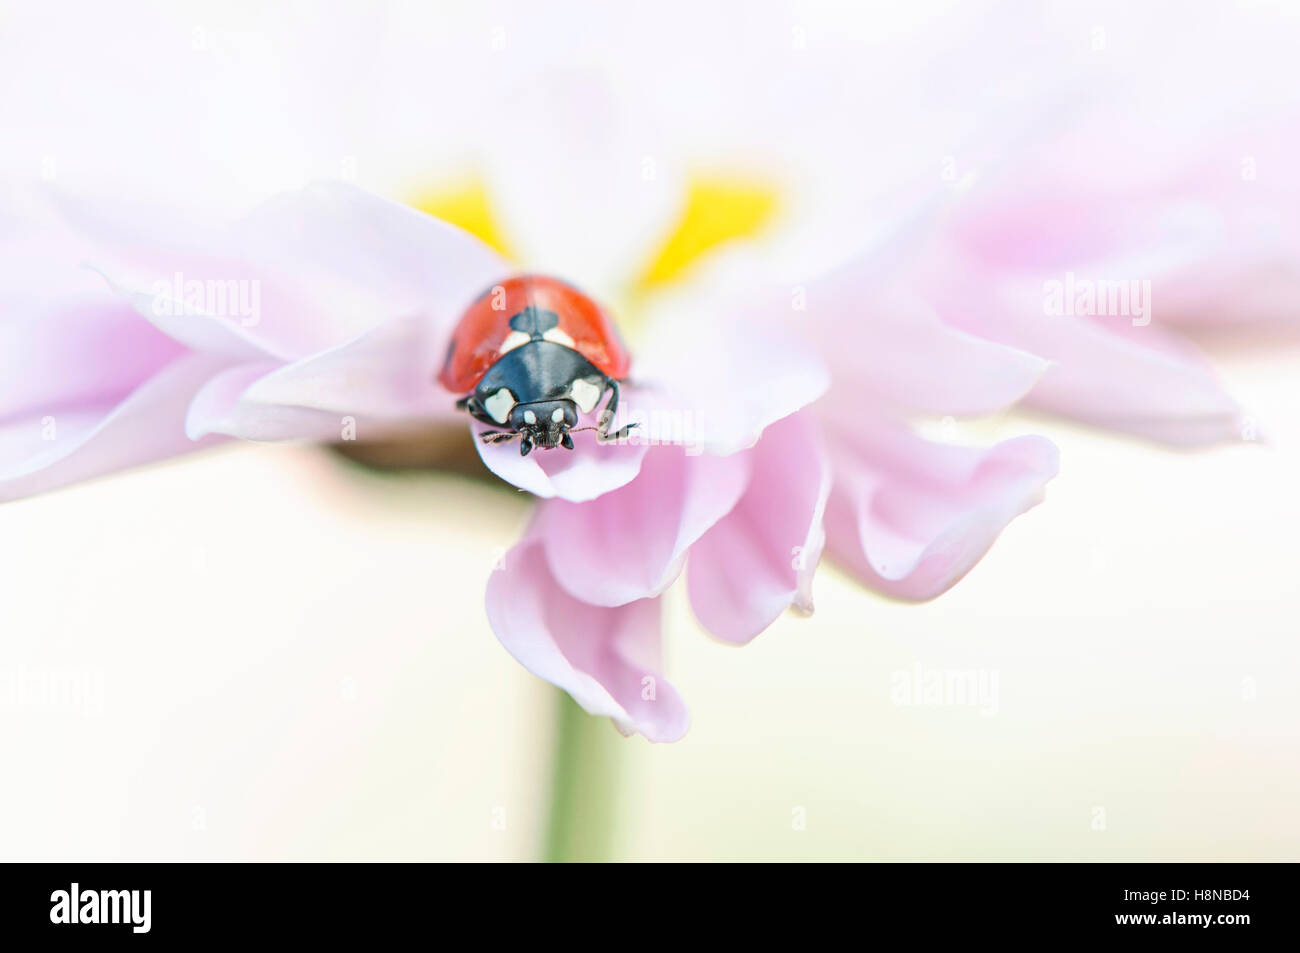 Ein sieben-Punkt Marienkäfer auf eine rosa Gänseblümchen Blume Stockfoto